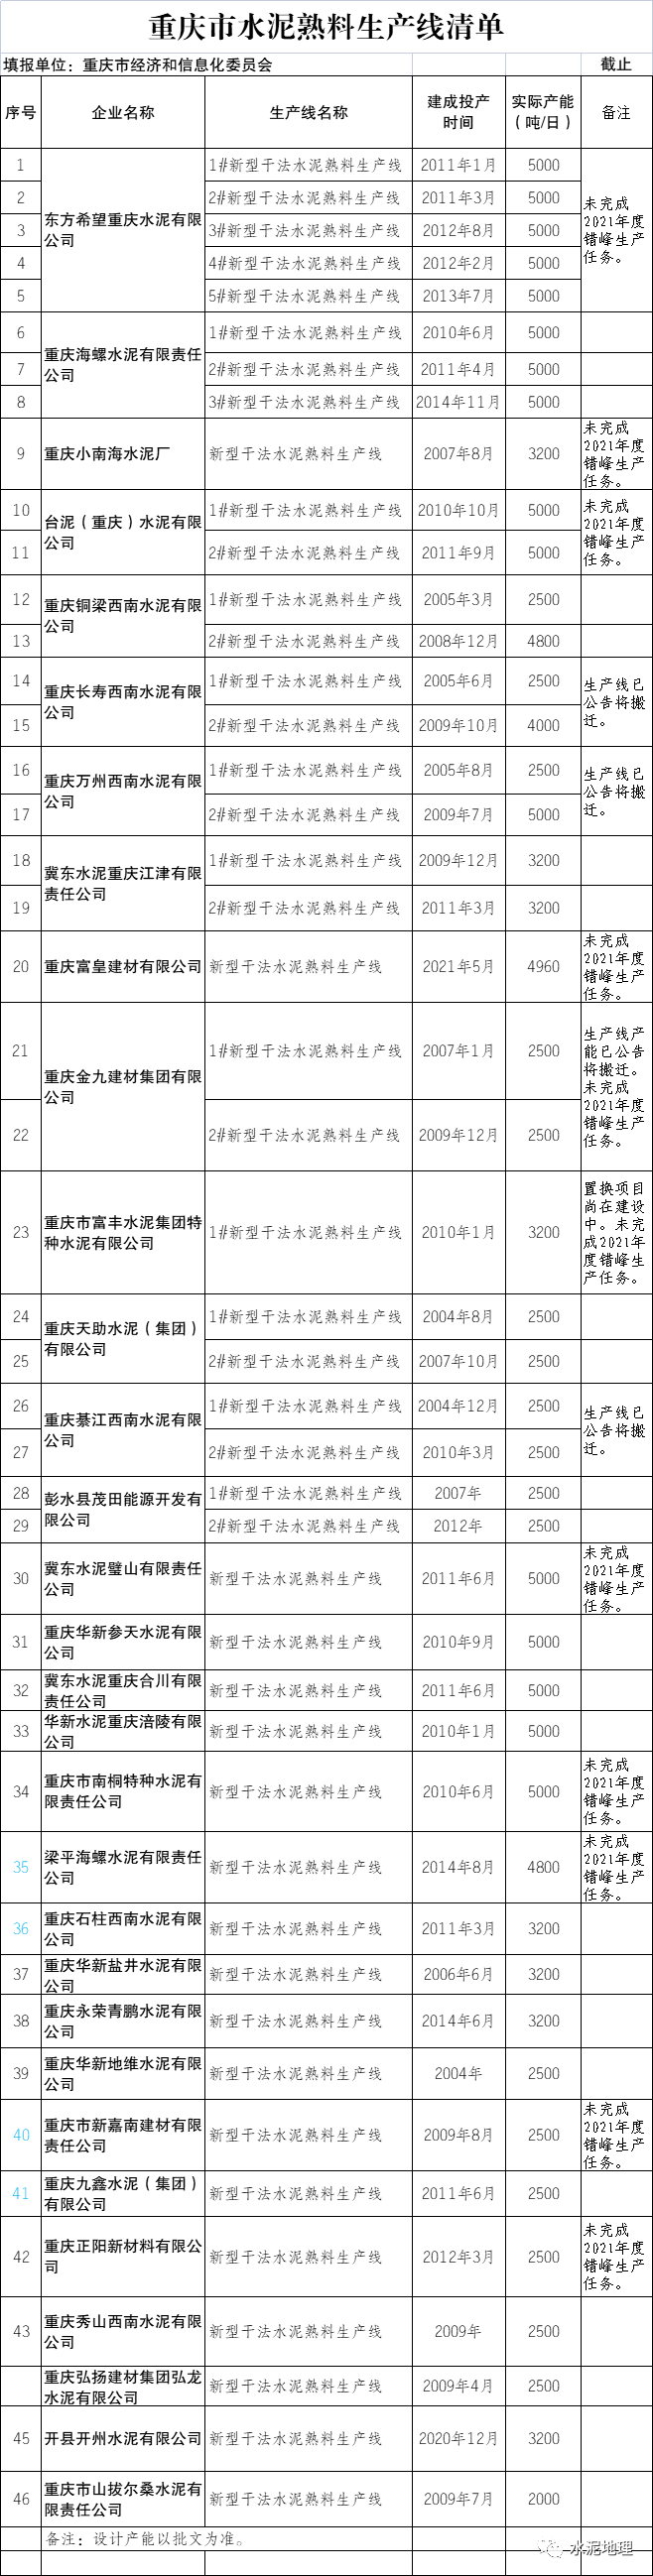 网信彩票～购彩大厅重庆公布46条水泥熟料生产线清单，其中8条将搬迁！